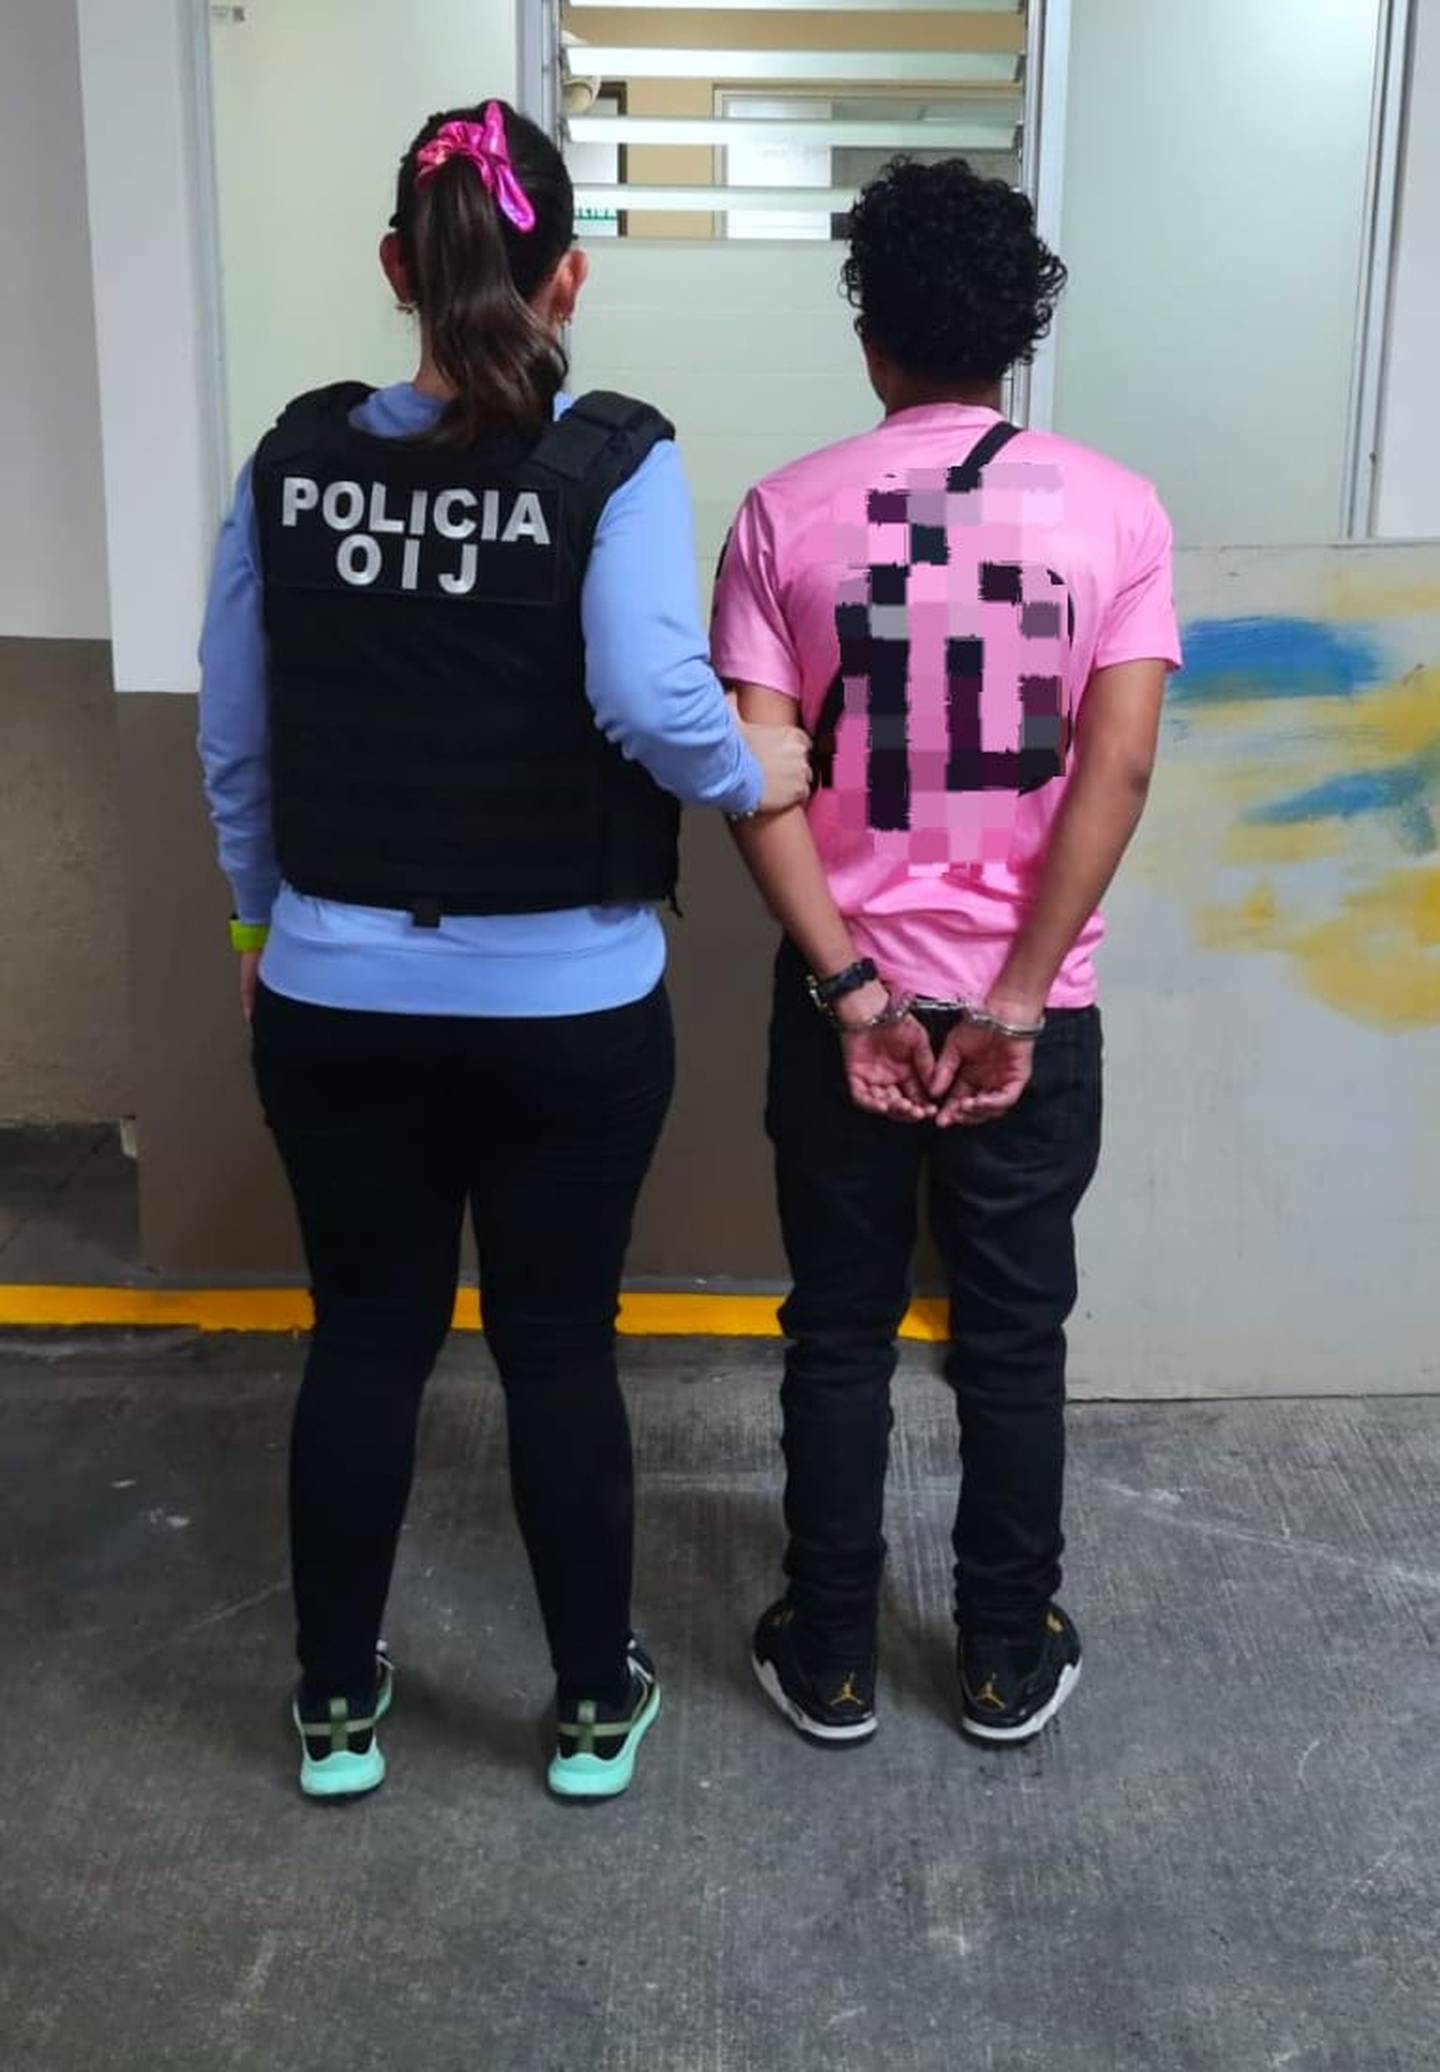 Un sujeto de apellido Hernández, de 20 años, fue enviado a la cárcel por ser sospechoso de una violación calificada contra una persona menor de edad ocurrido en La Carpio, La Uruca. Foto: OIJ